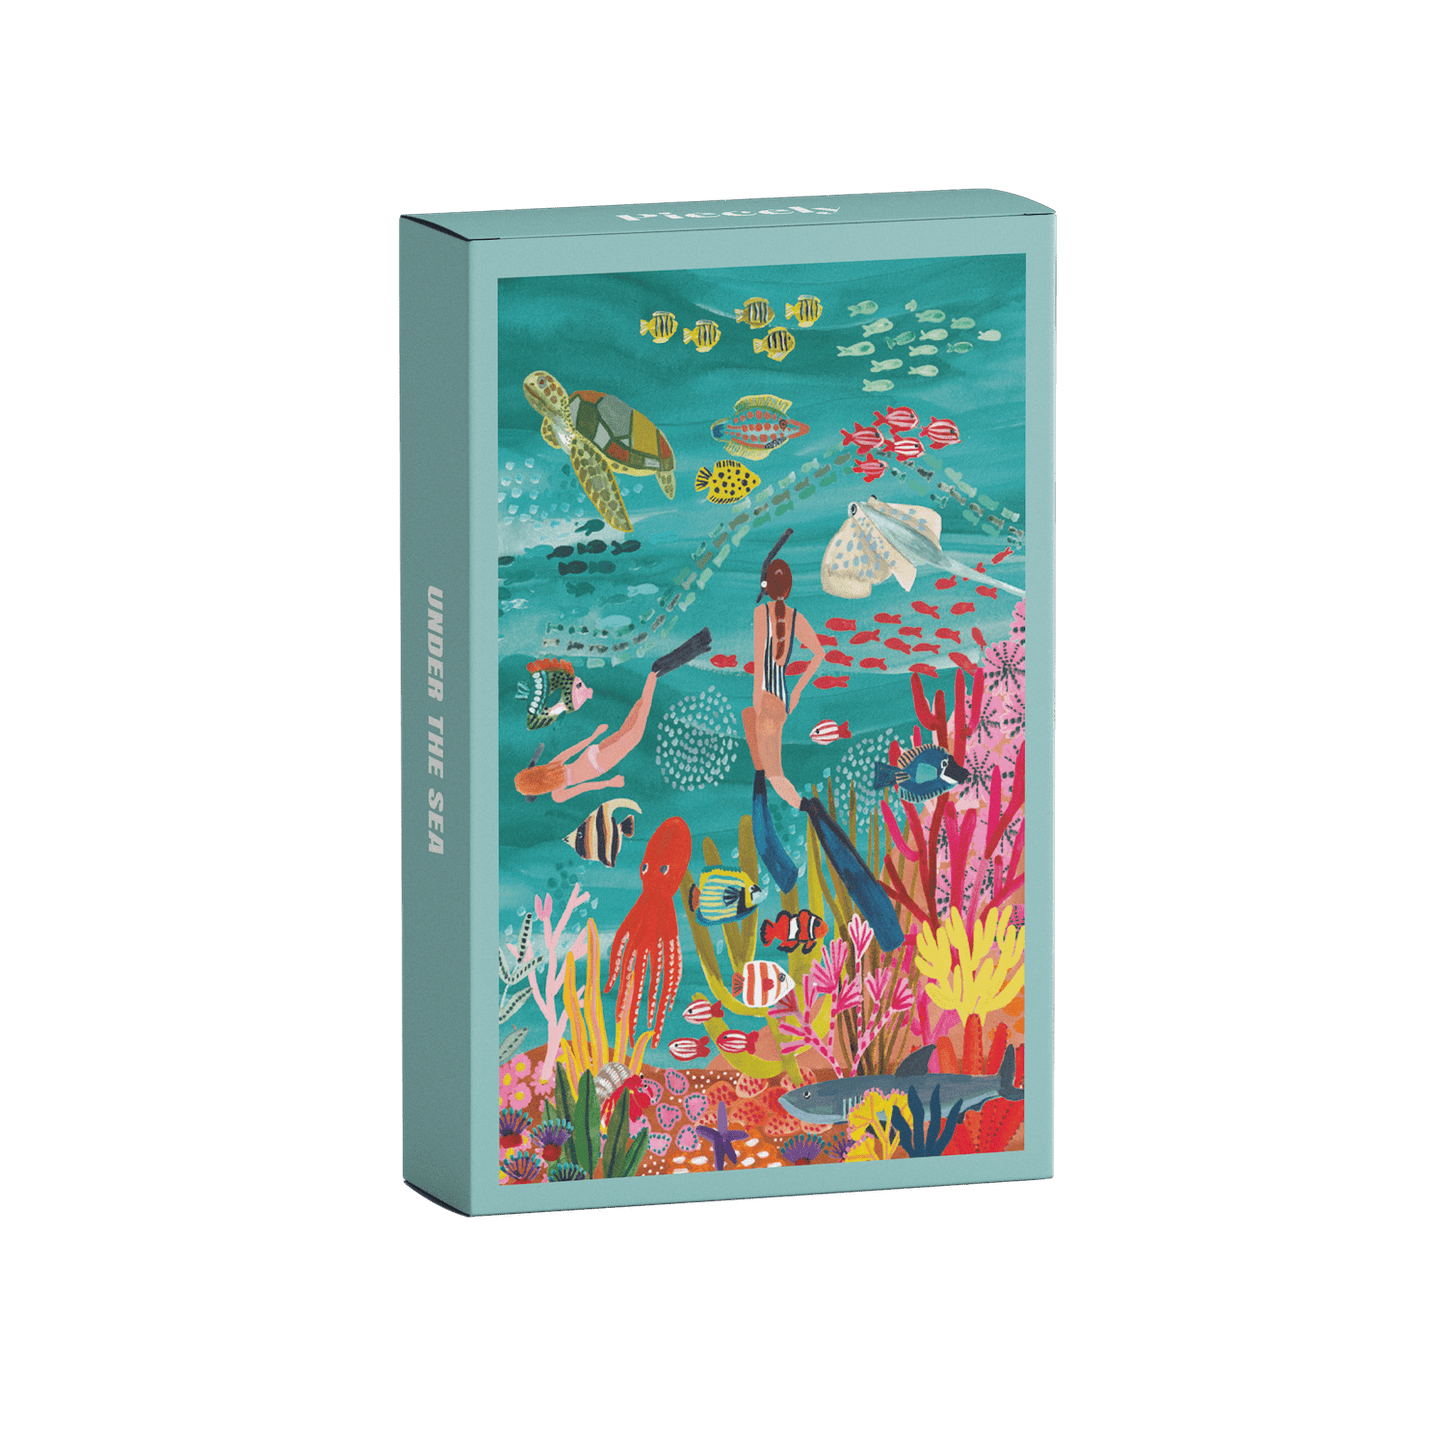 99-teiliges Under The Sea Minipuzzle für Erwachsene, das zwei Frauen beim Schnorcheln im Meer zeigt. Die Frauen sind umgeben von bunten Fischen, einem Oktopus, einem Rochen, einer Schildkröte und einem Hai.